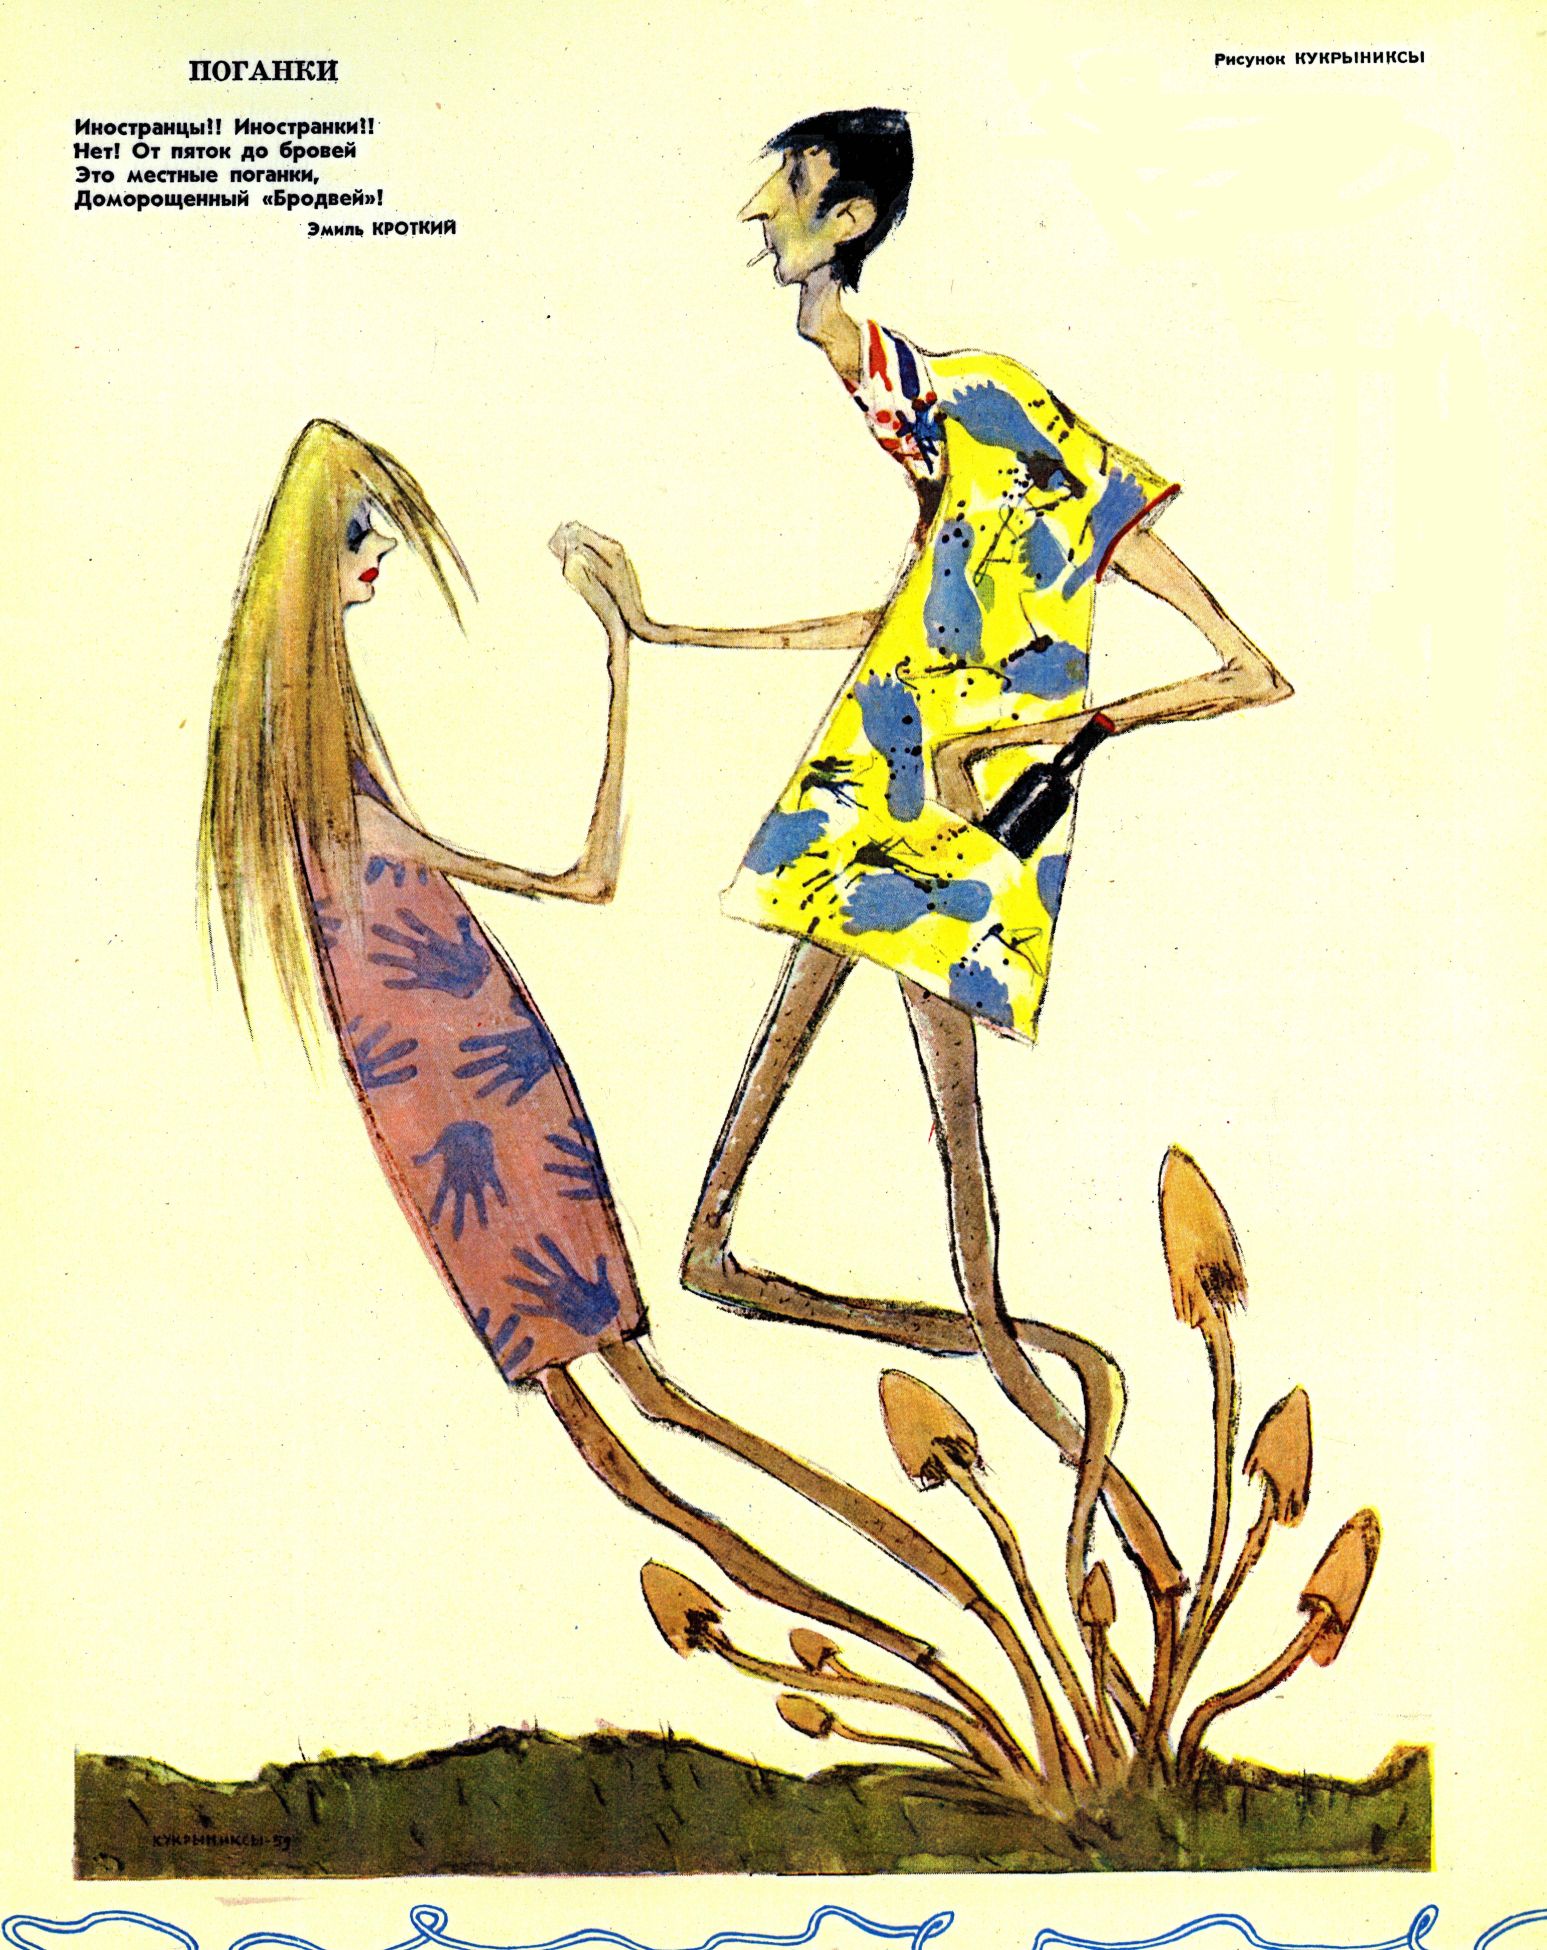 Карикатура на стиляг. Рисунок Кукрыниксов 1960 года